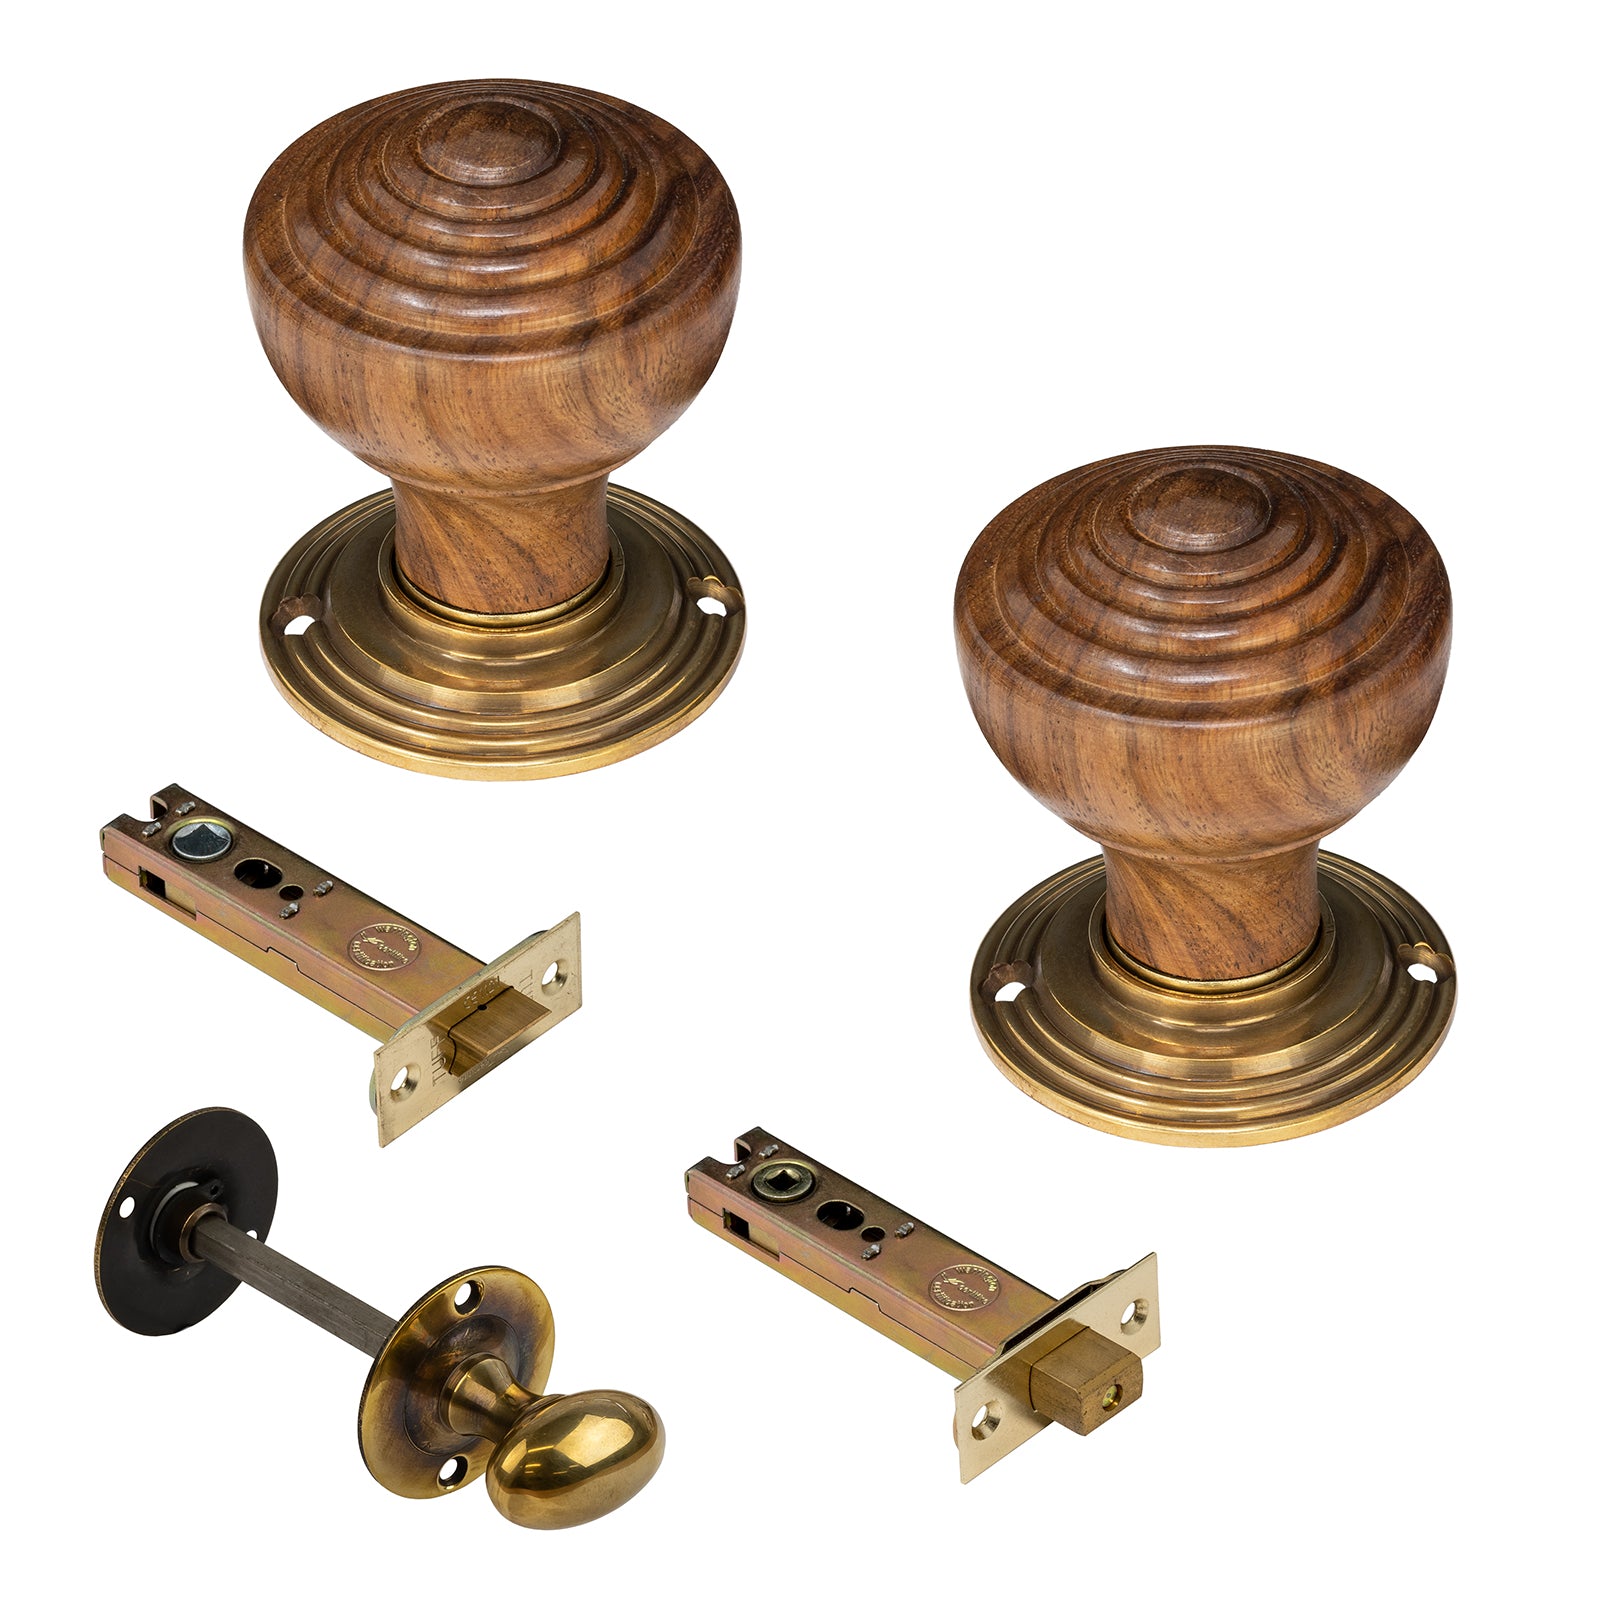 Wooden door knobs 4 inch bathroom set